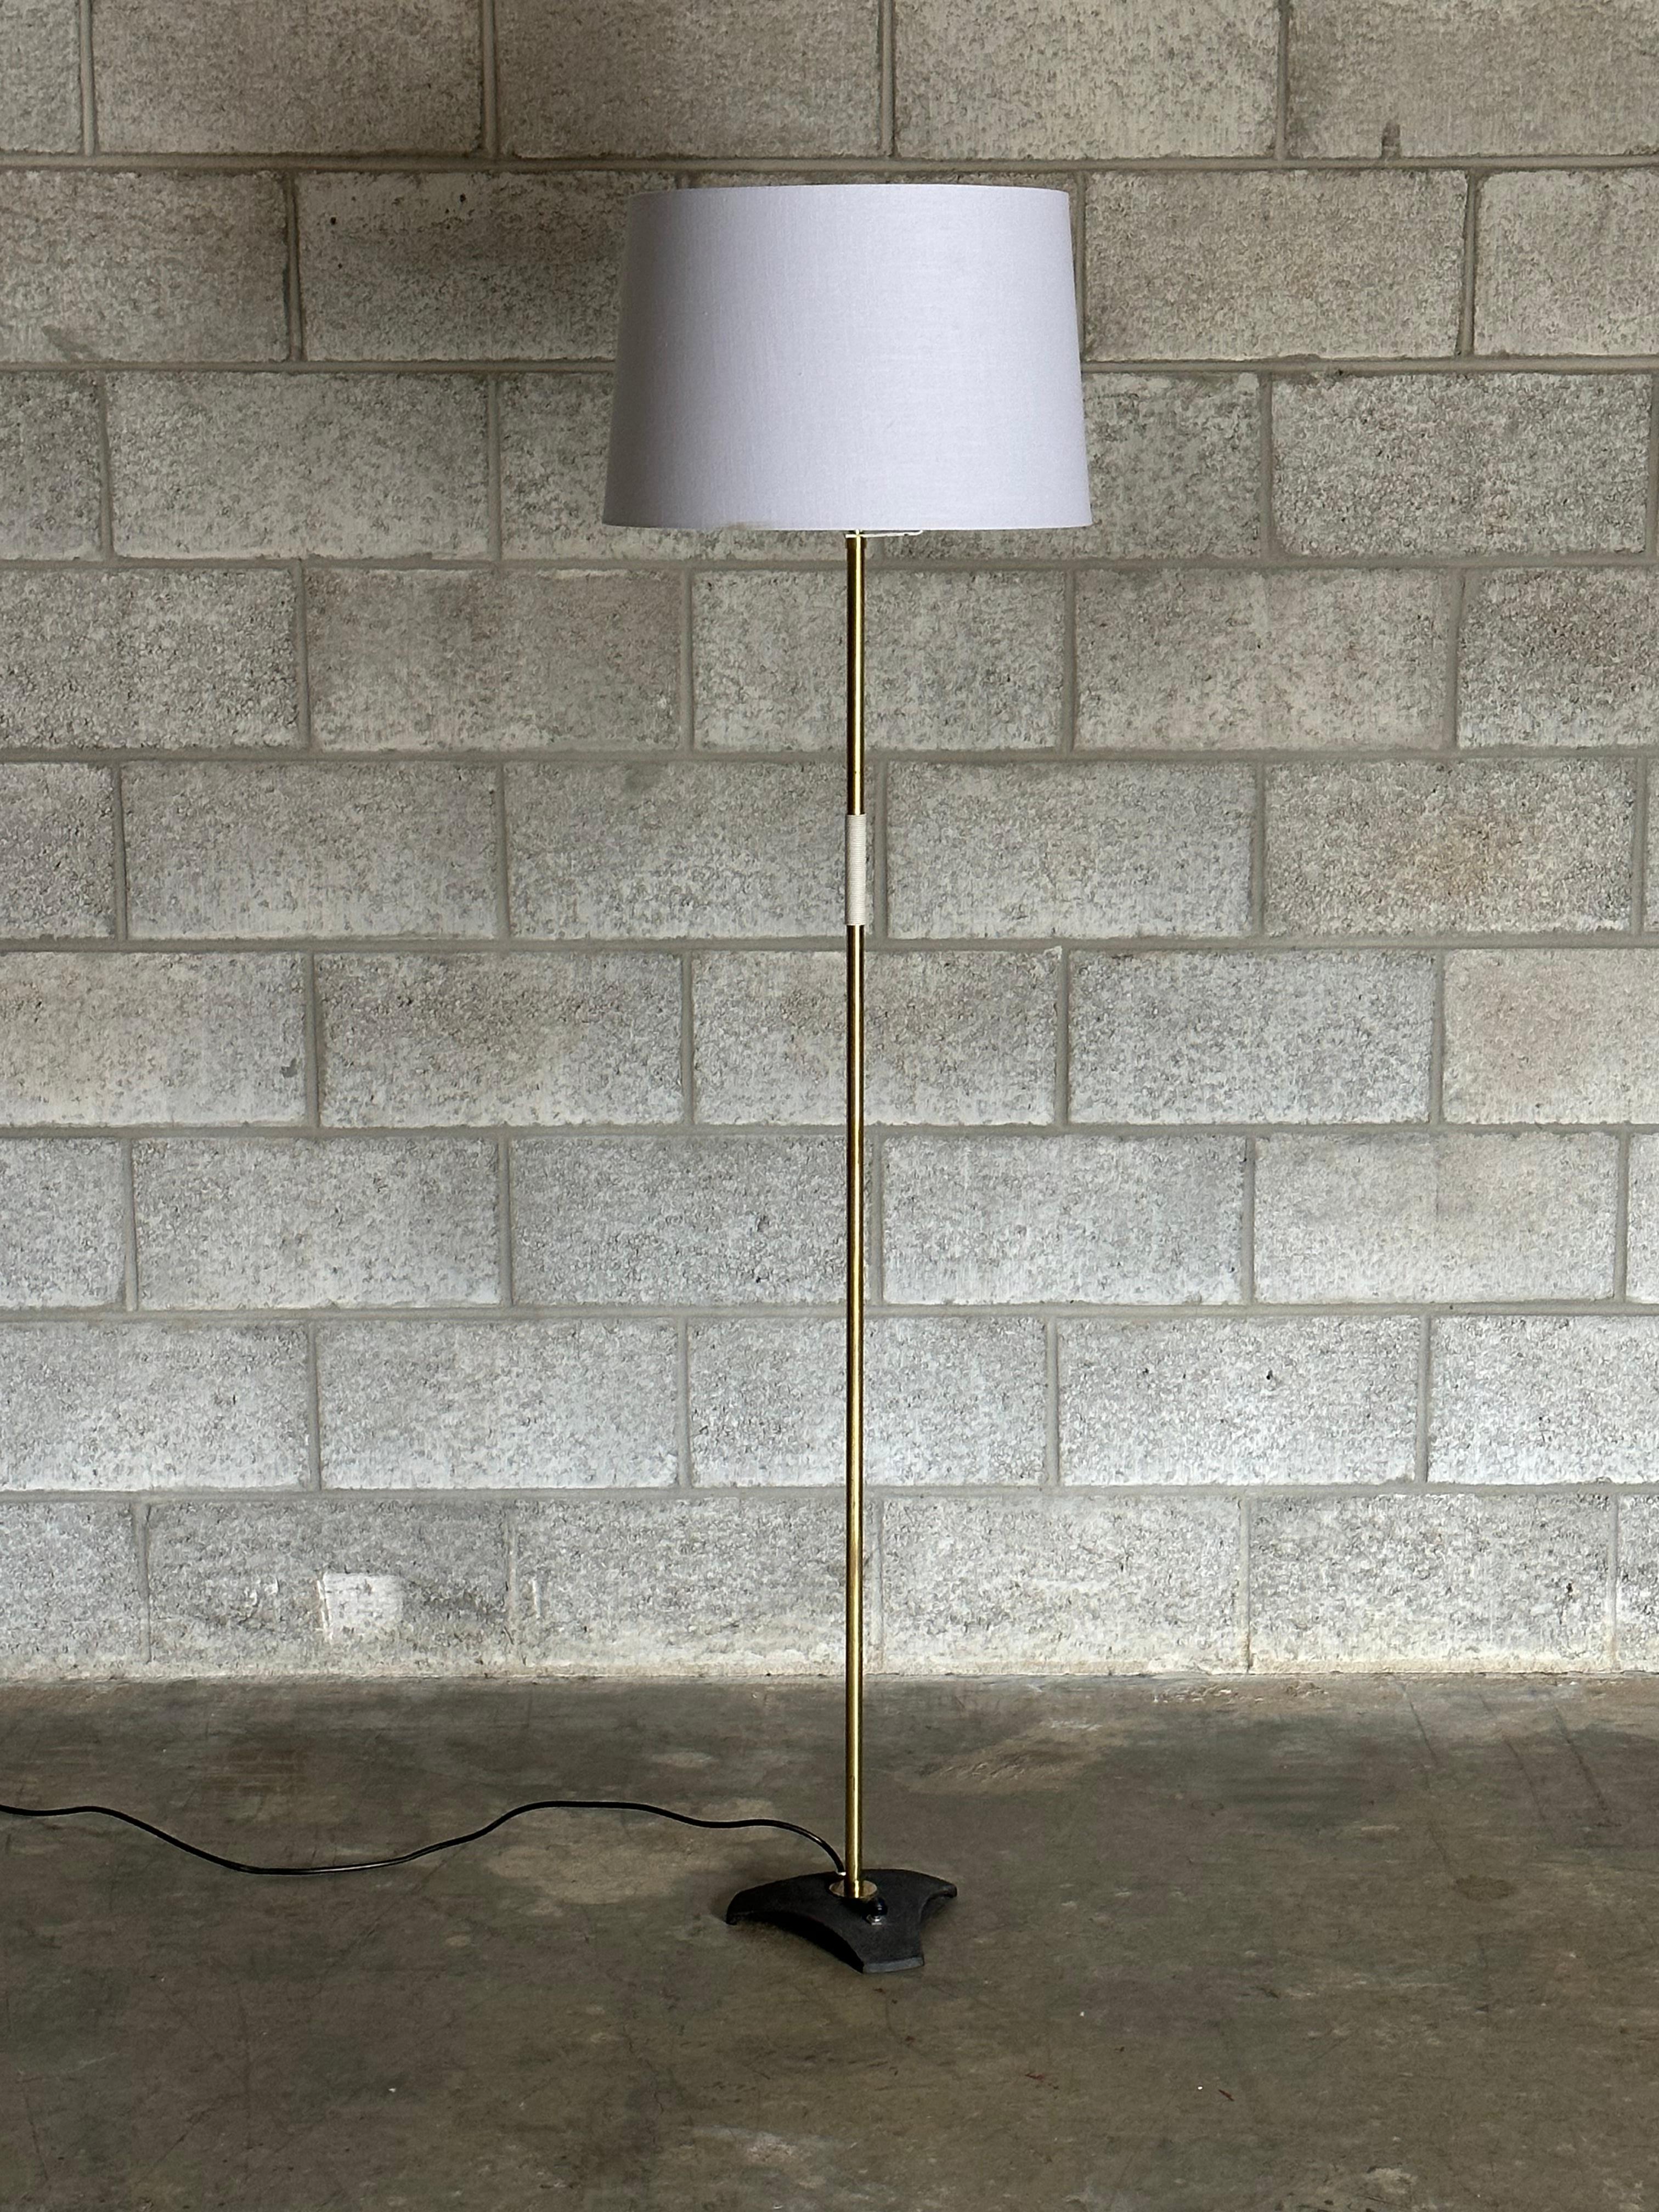 Eine wunderschöne minimalistische Stehleuchte von Rupert Nikoll. Die Leuchte besteht aus einem Sockel aus Gusseisen mit dünnen vermessingten Rohren, einem mit Nylon umwickelten Teil und schließlich einem klassischen Schirm. Großartige